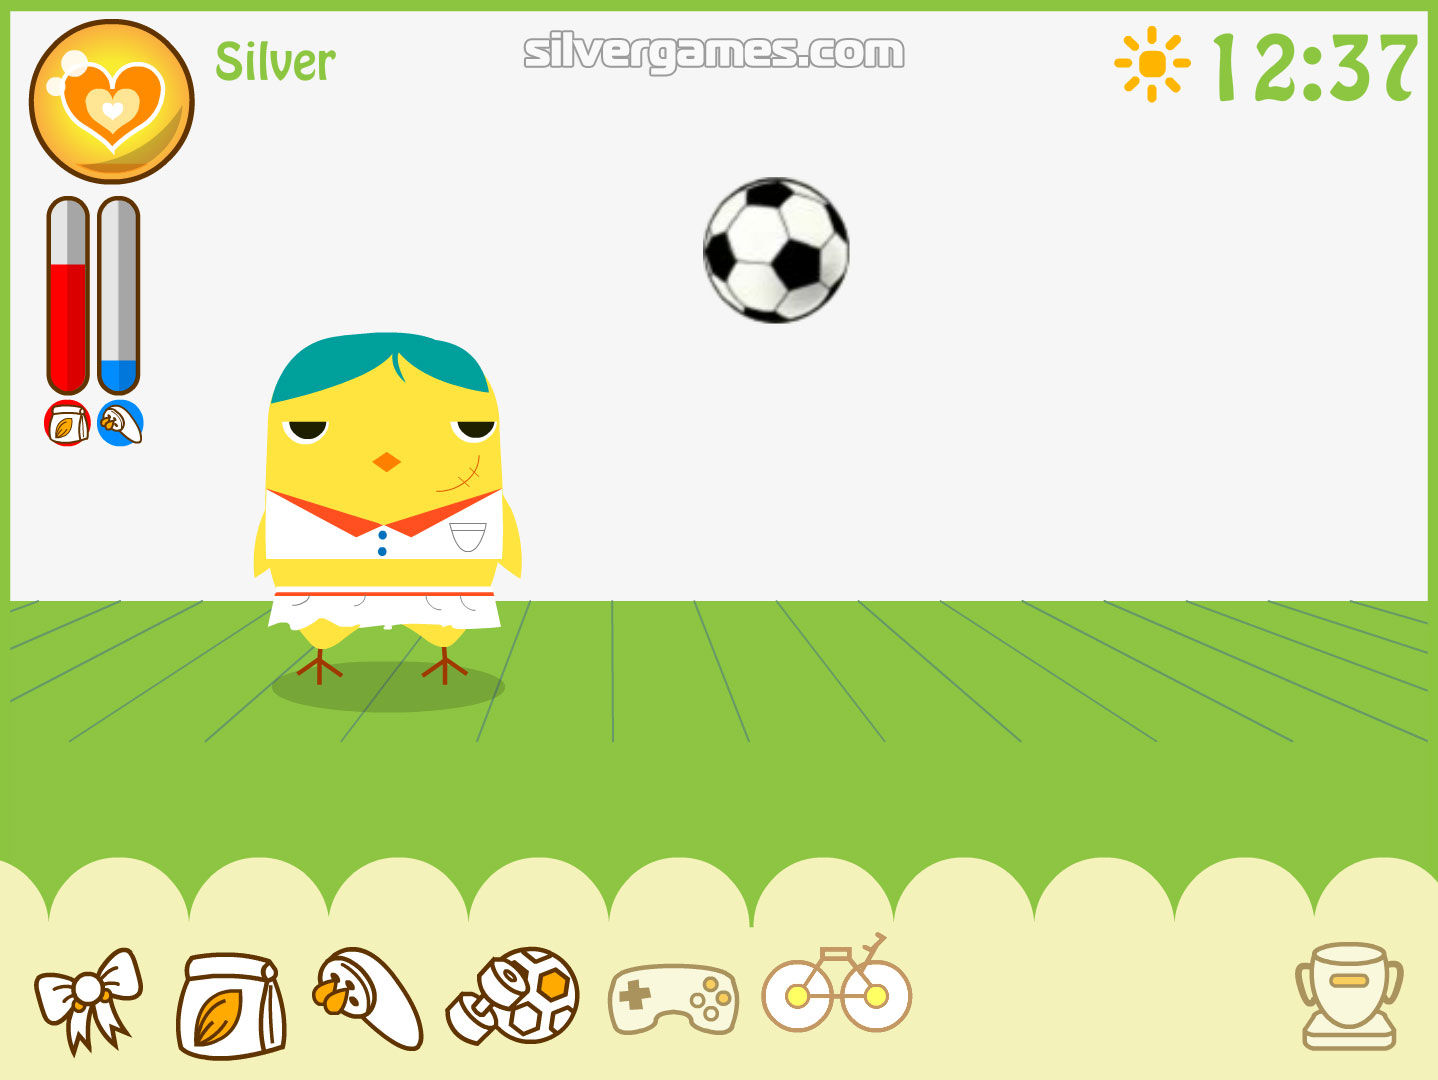 https://a.silvergames.com/screenshots/can-your-pet/3_duck-football-gameplay.jpg